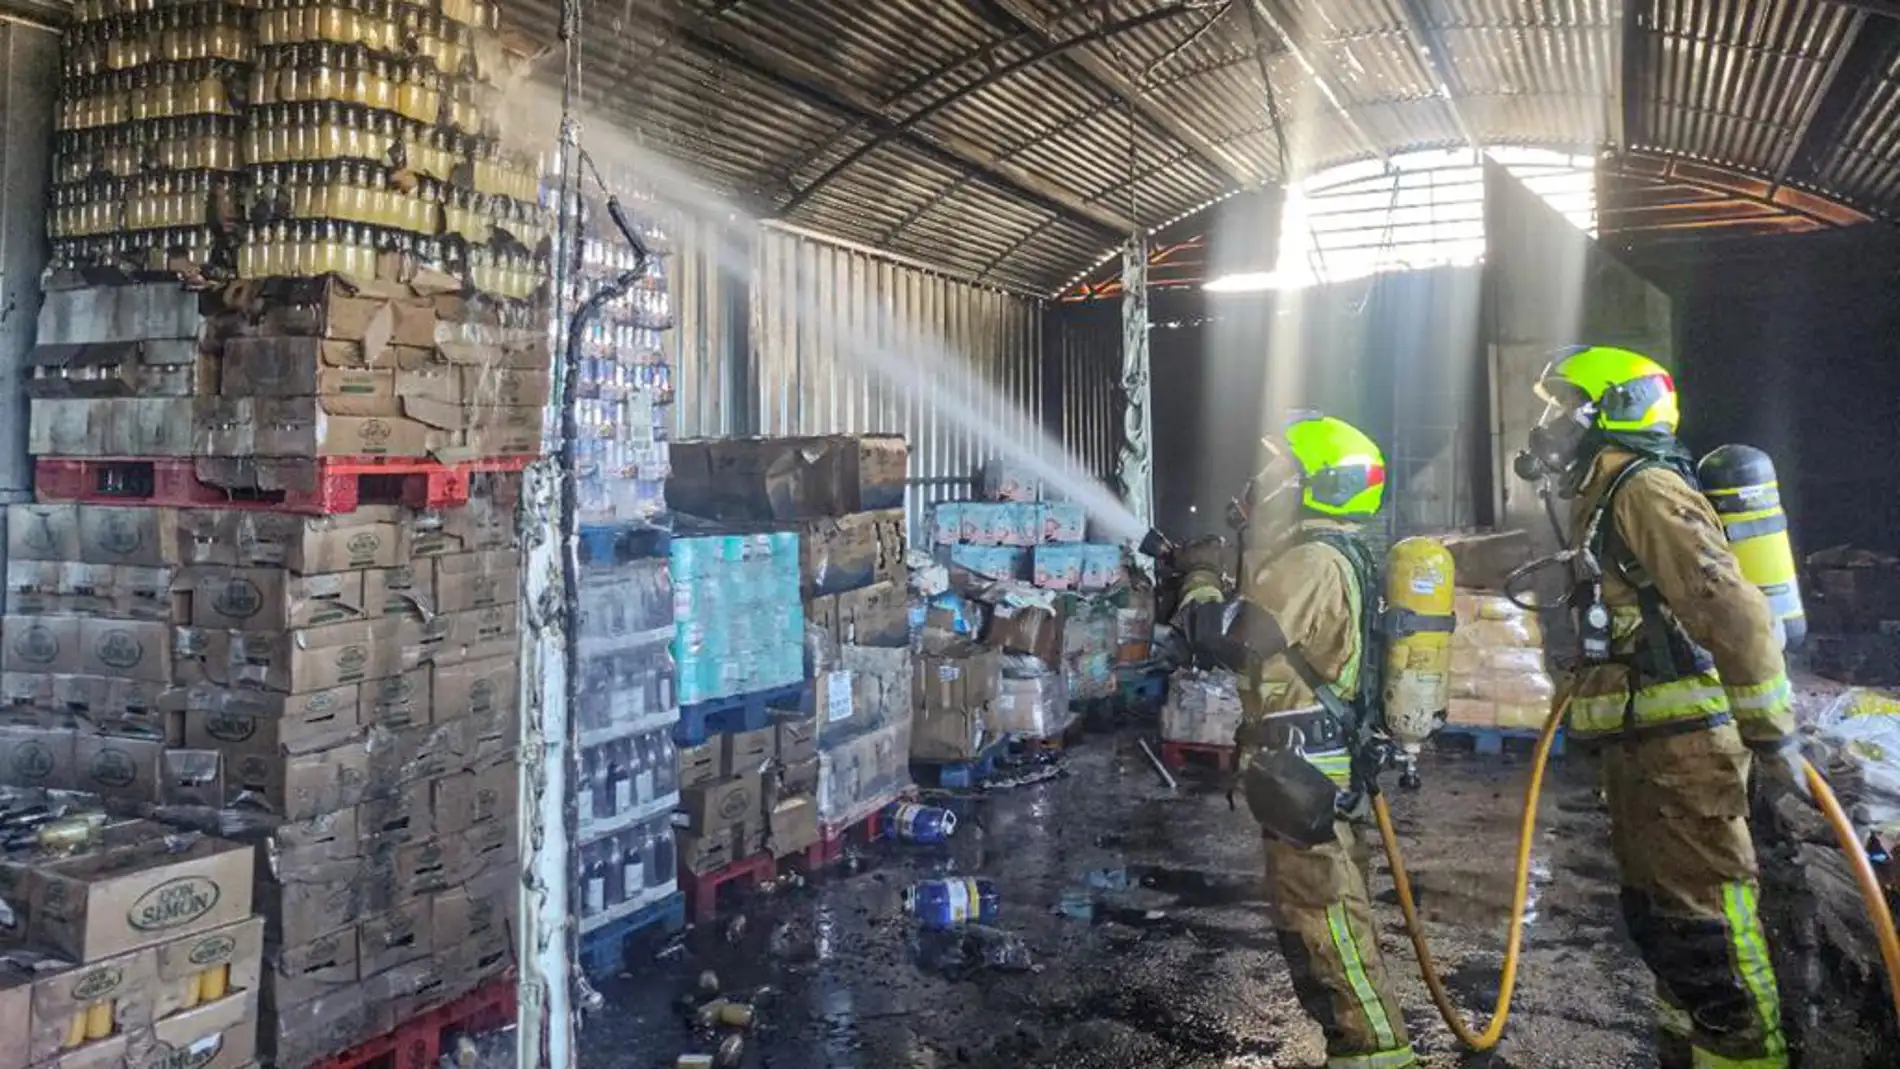 Incendio sin heridos en un descampado contiguo a un supermercado en Benidorm